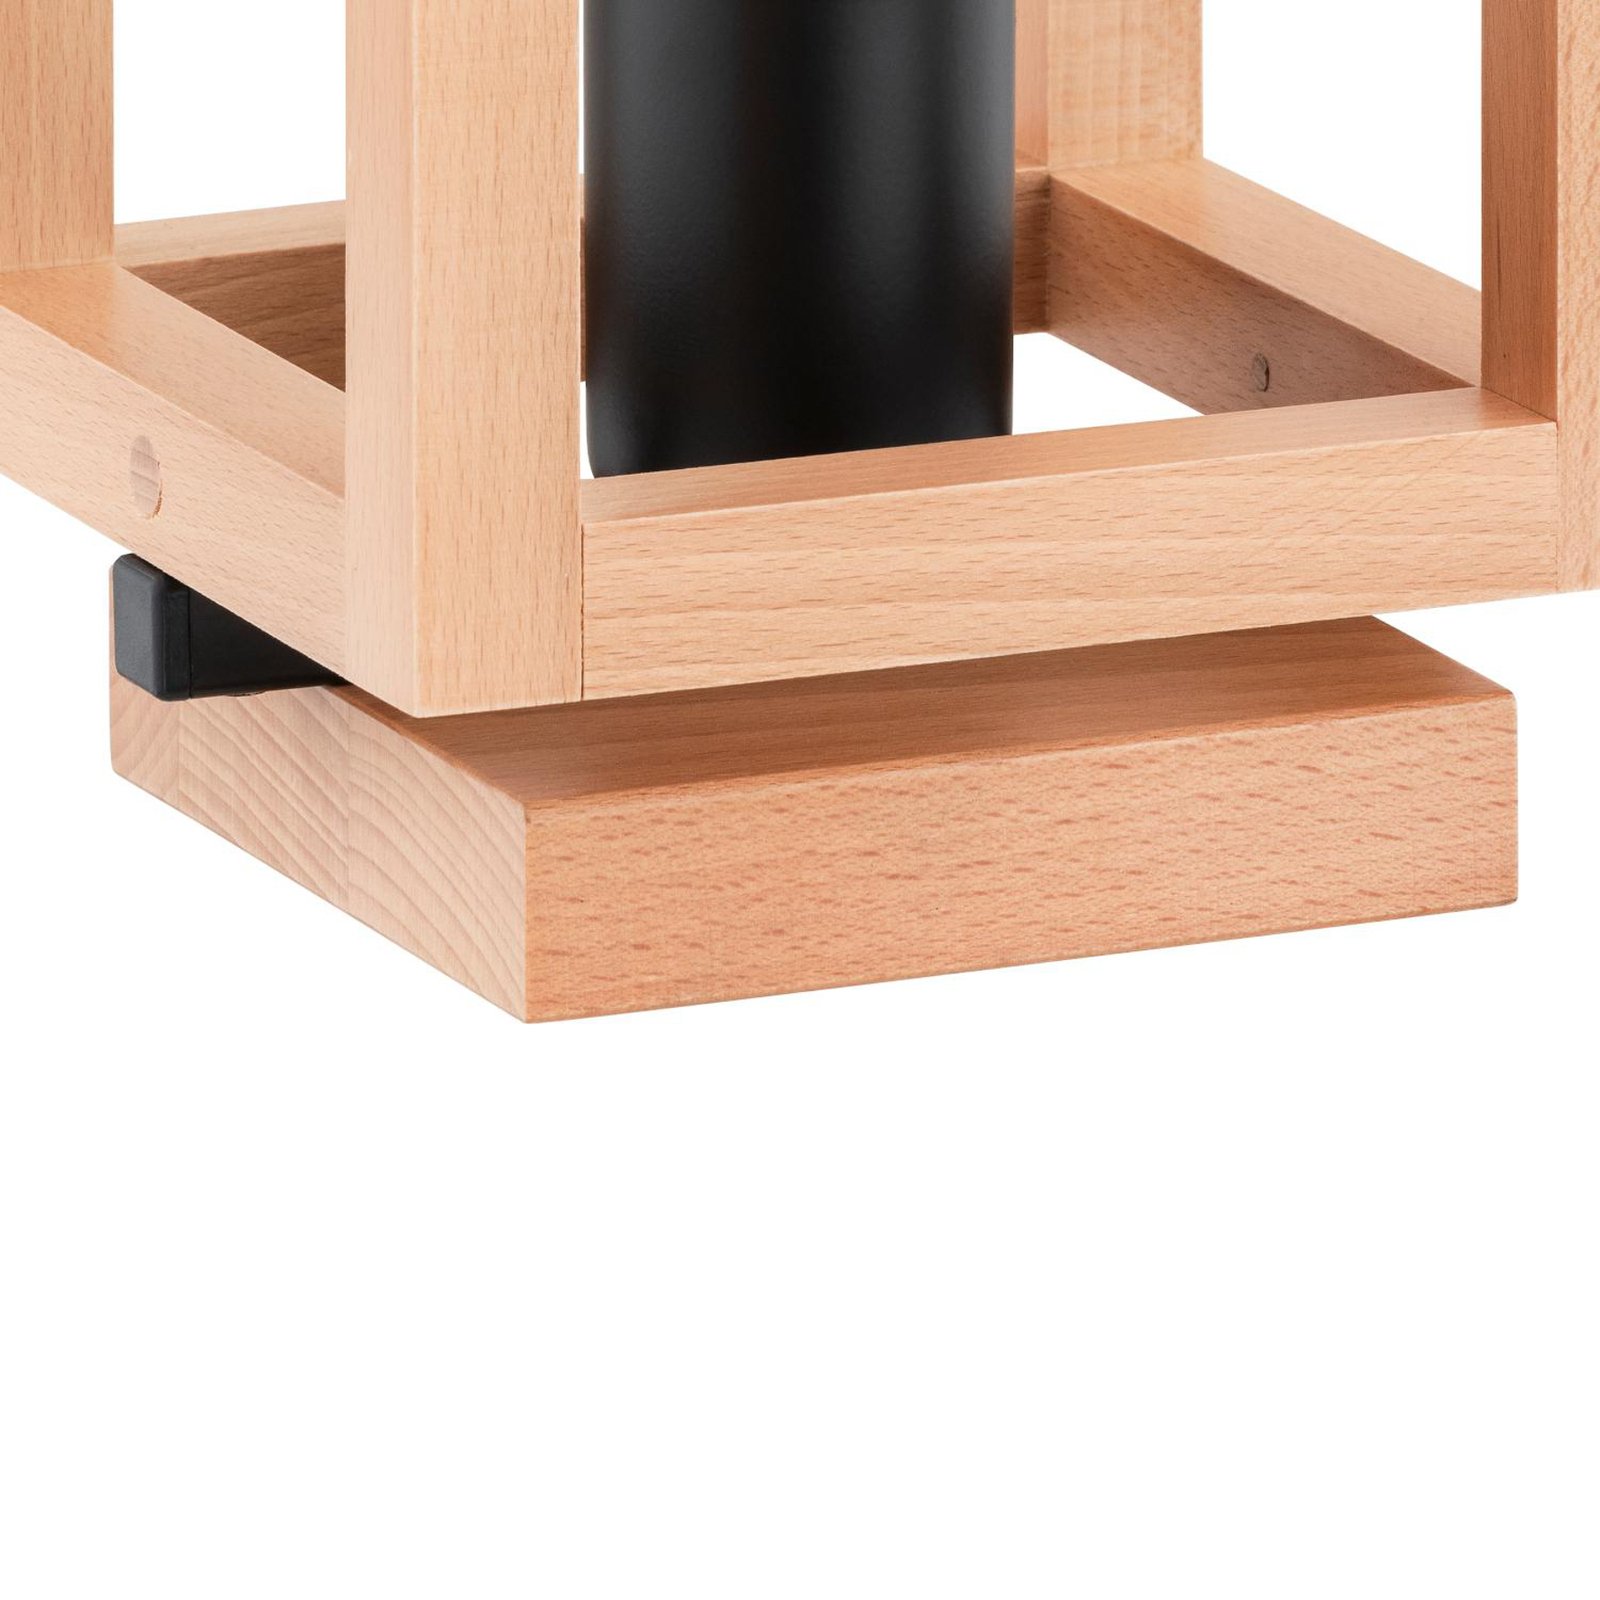 Namizna svetilka Pako, oblika kletke, kocka, les, 16 x 16 x 25 cm